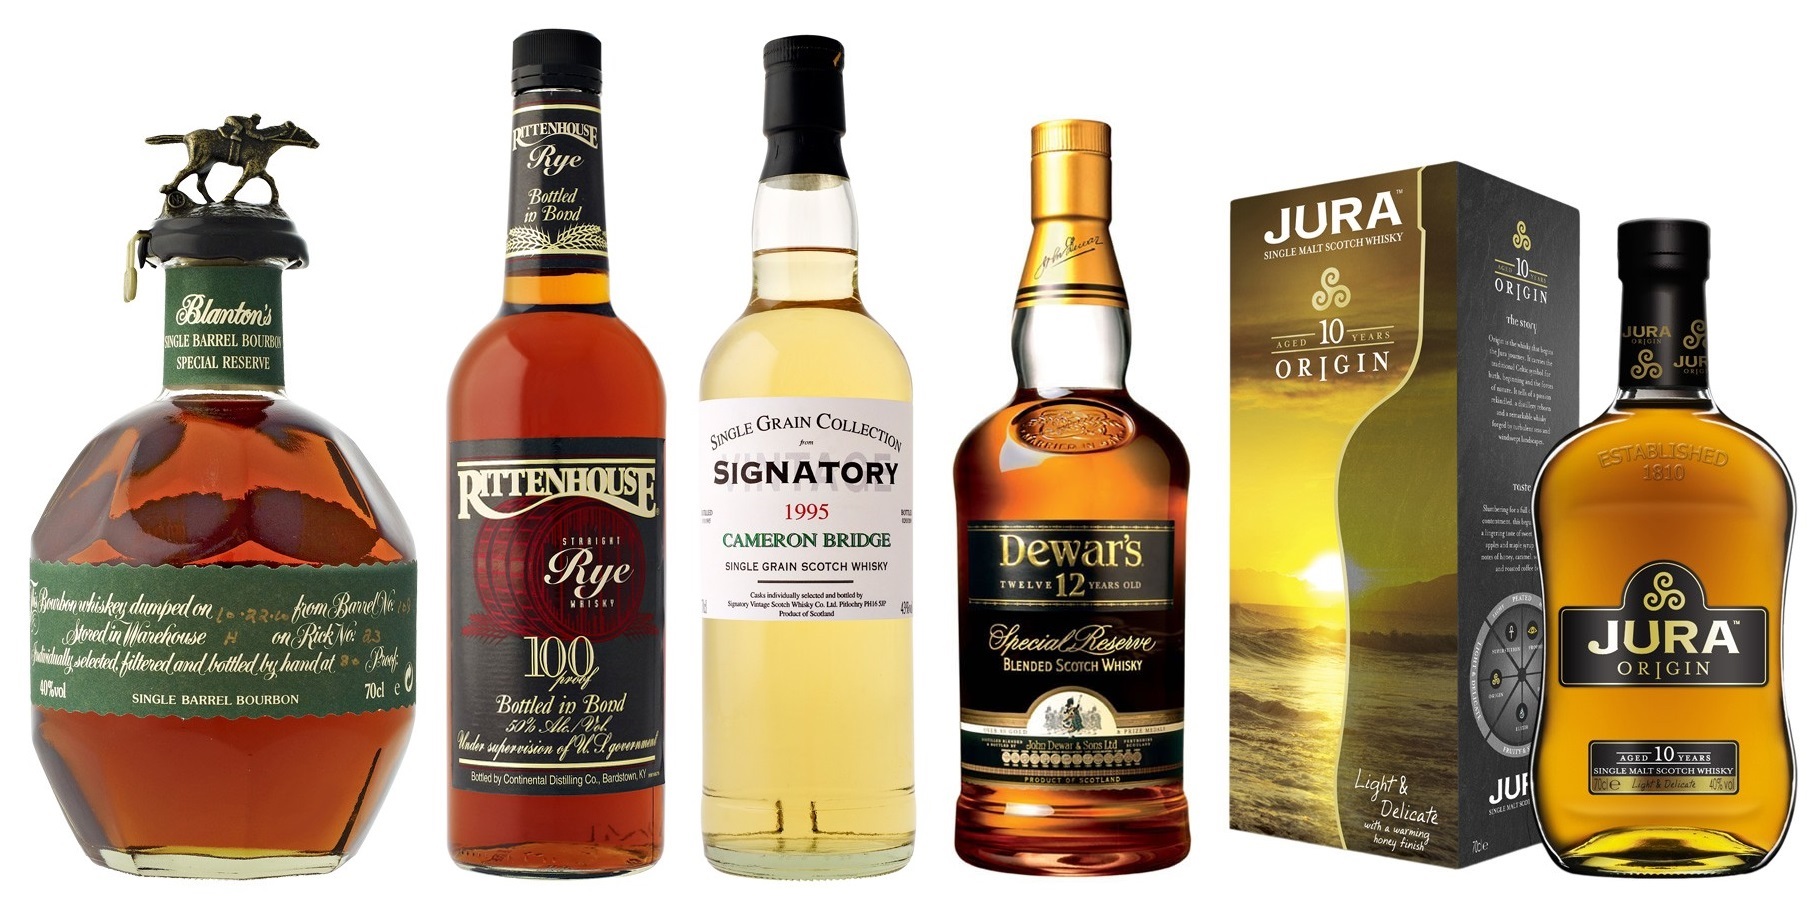 Quel whisky choisir pour offrir en cadeau ?